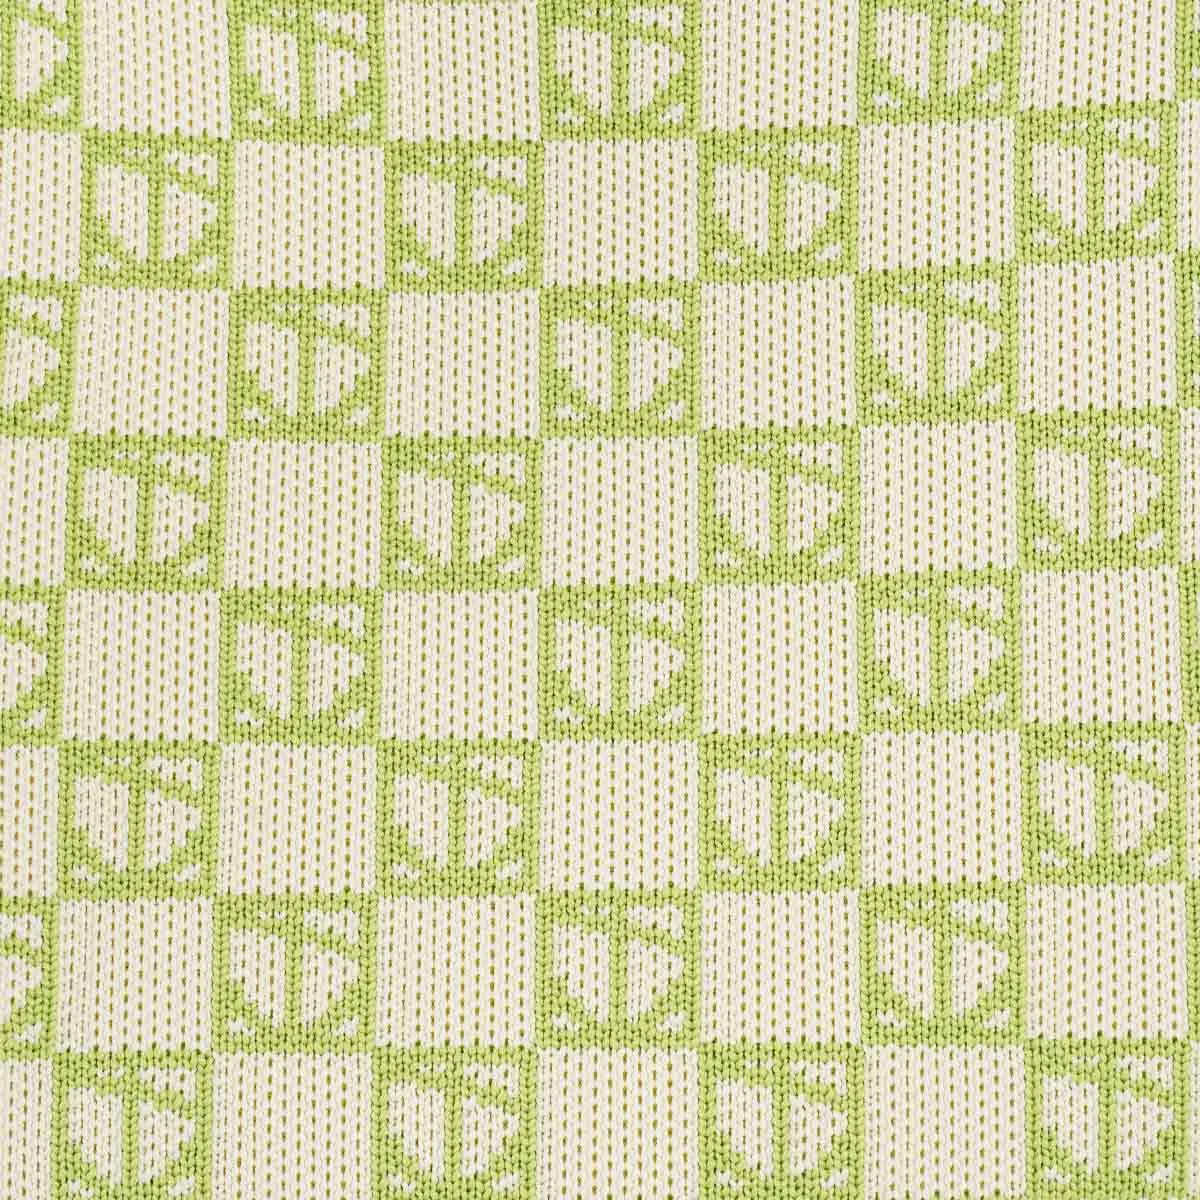 Nishelle Logo Knitted Market Bag in Grass